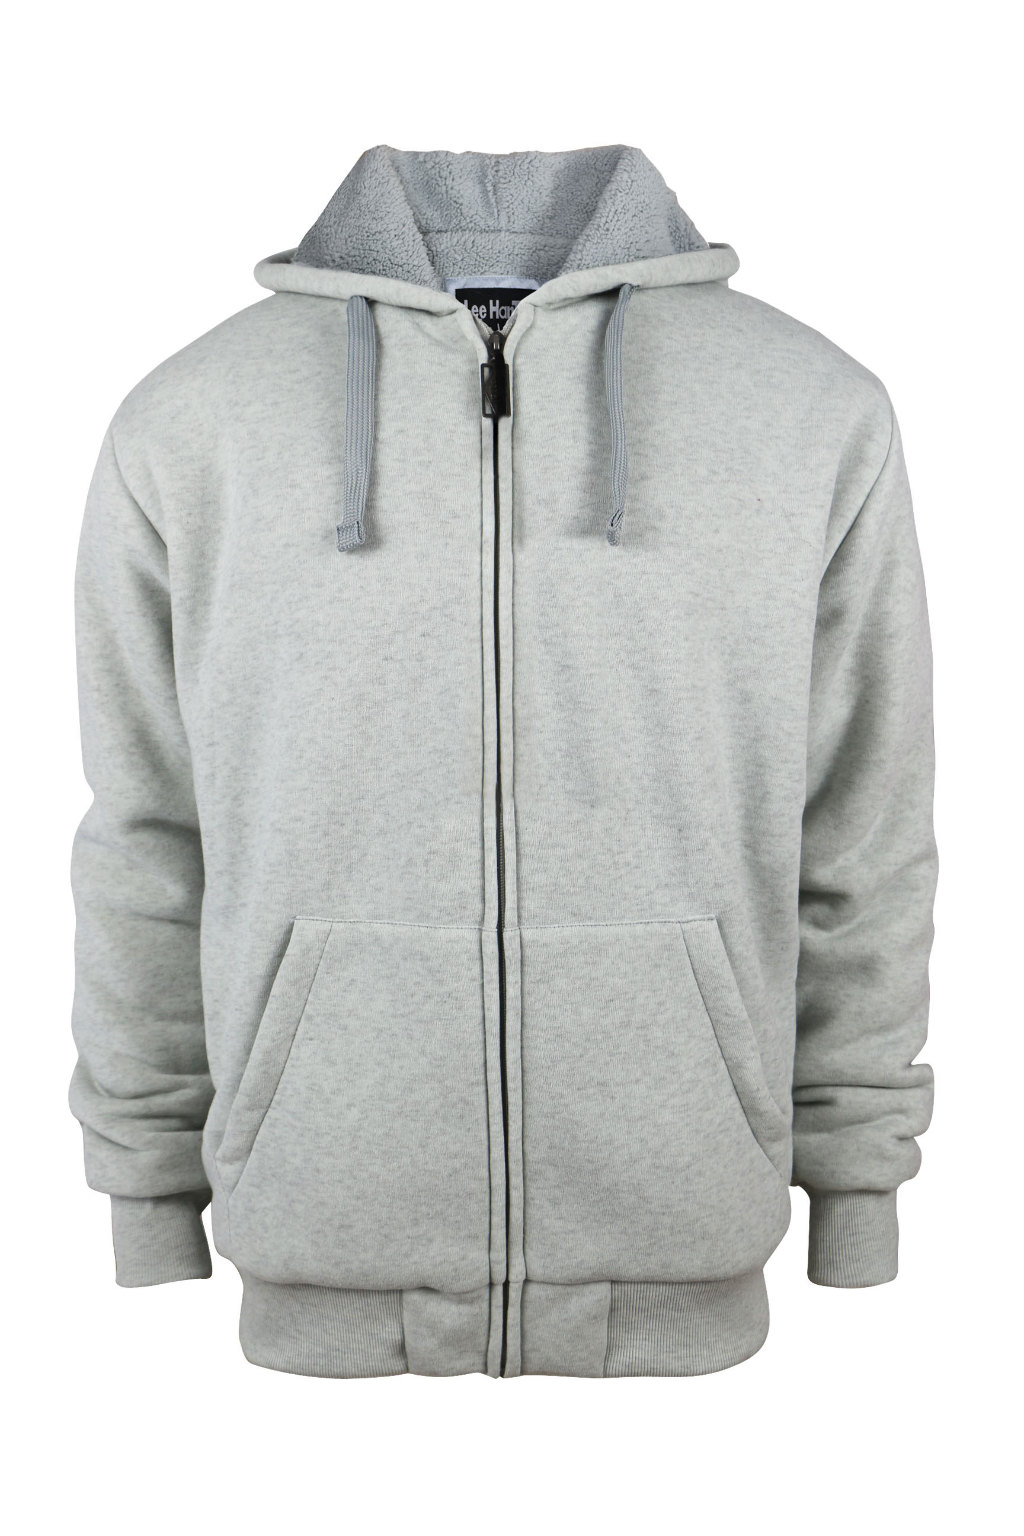 Wholesale Men's Fleece Zip Hoodie with Sherpa Lining - Light Grey, 2 X ...